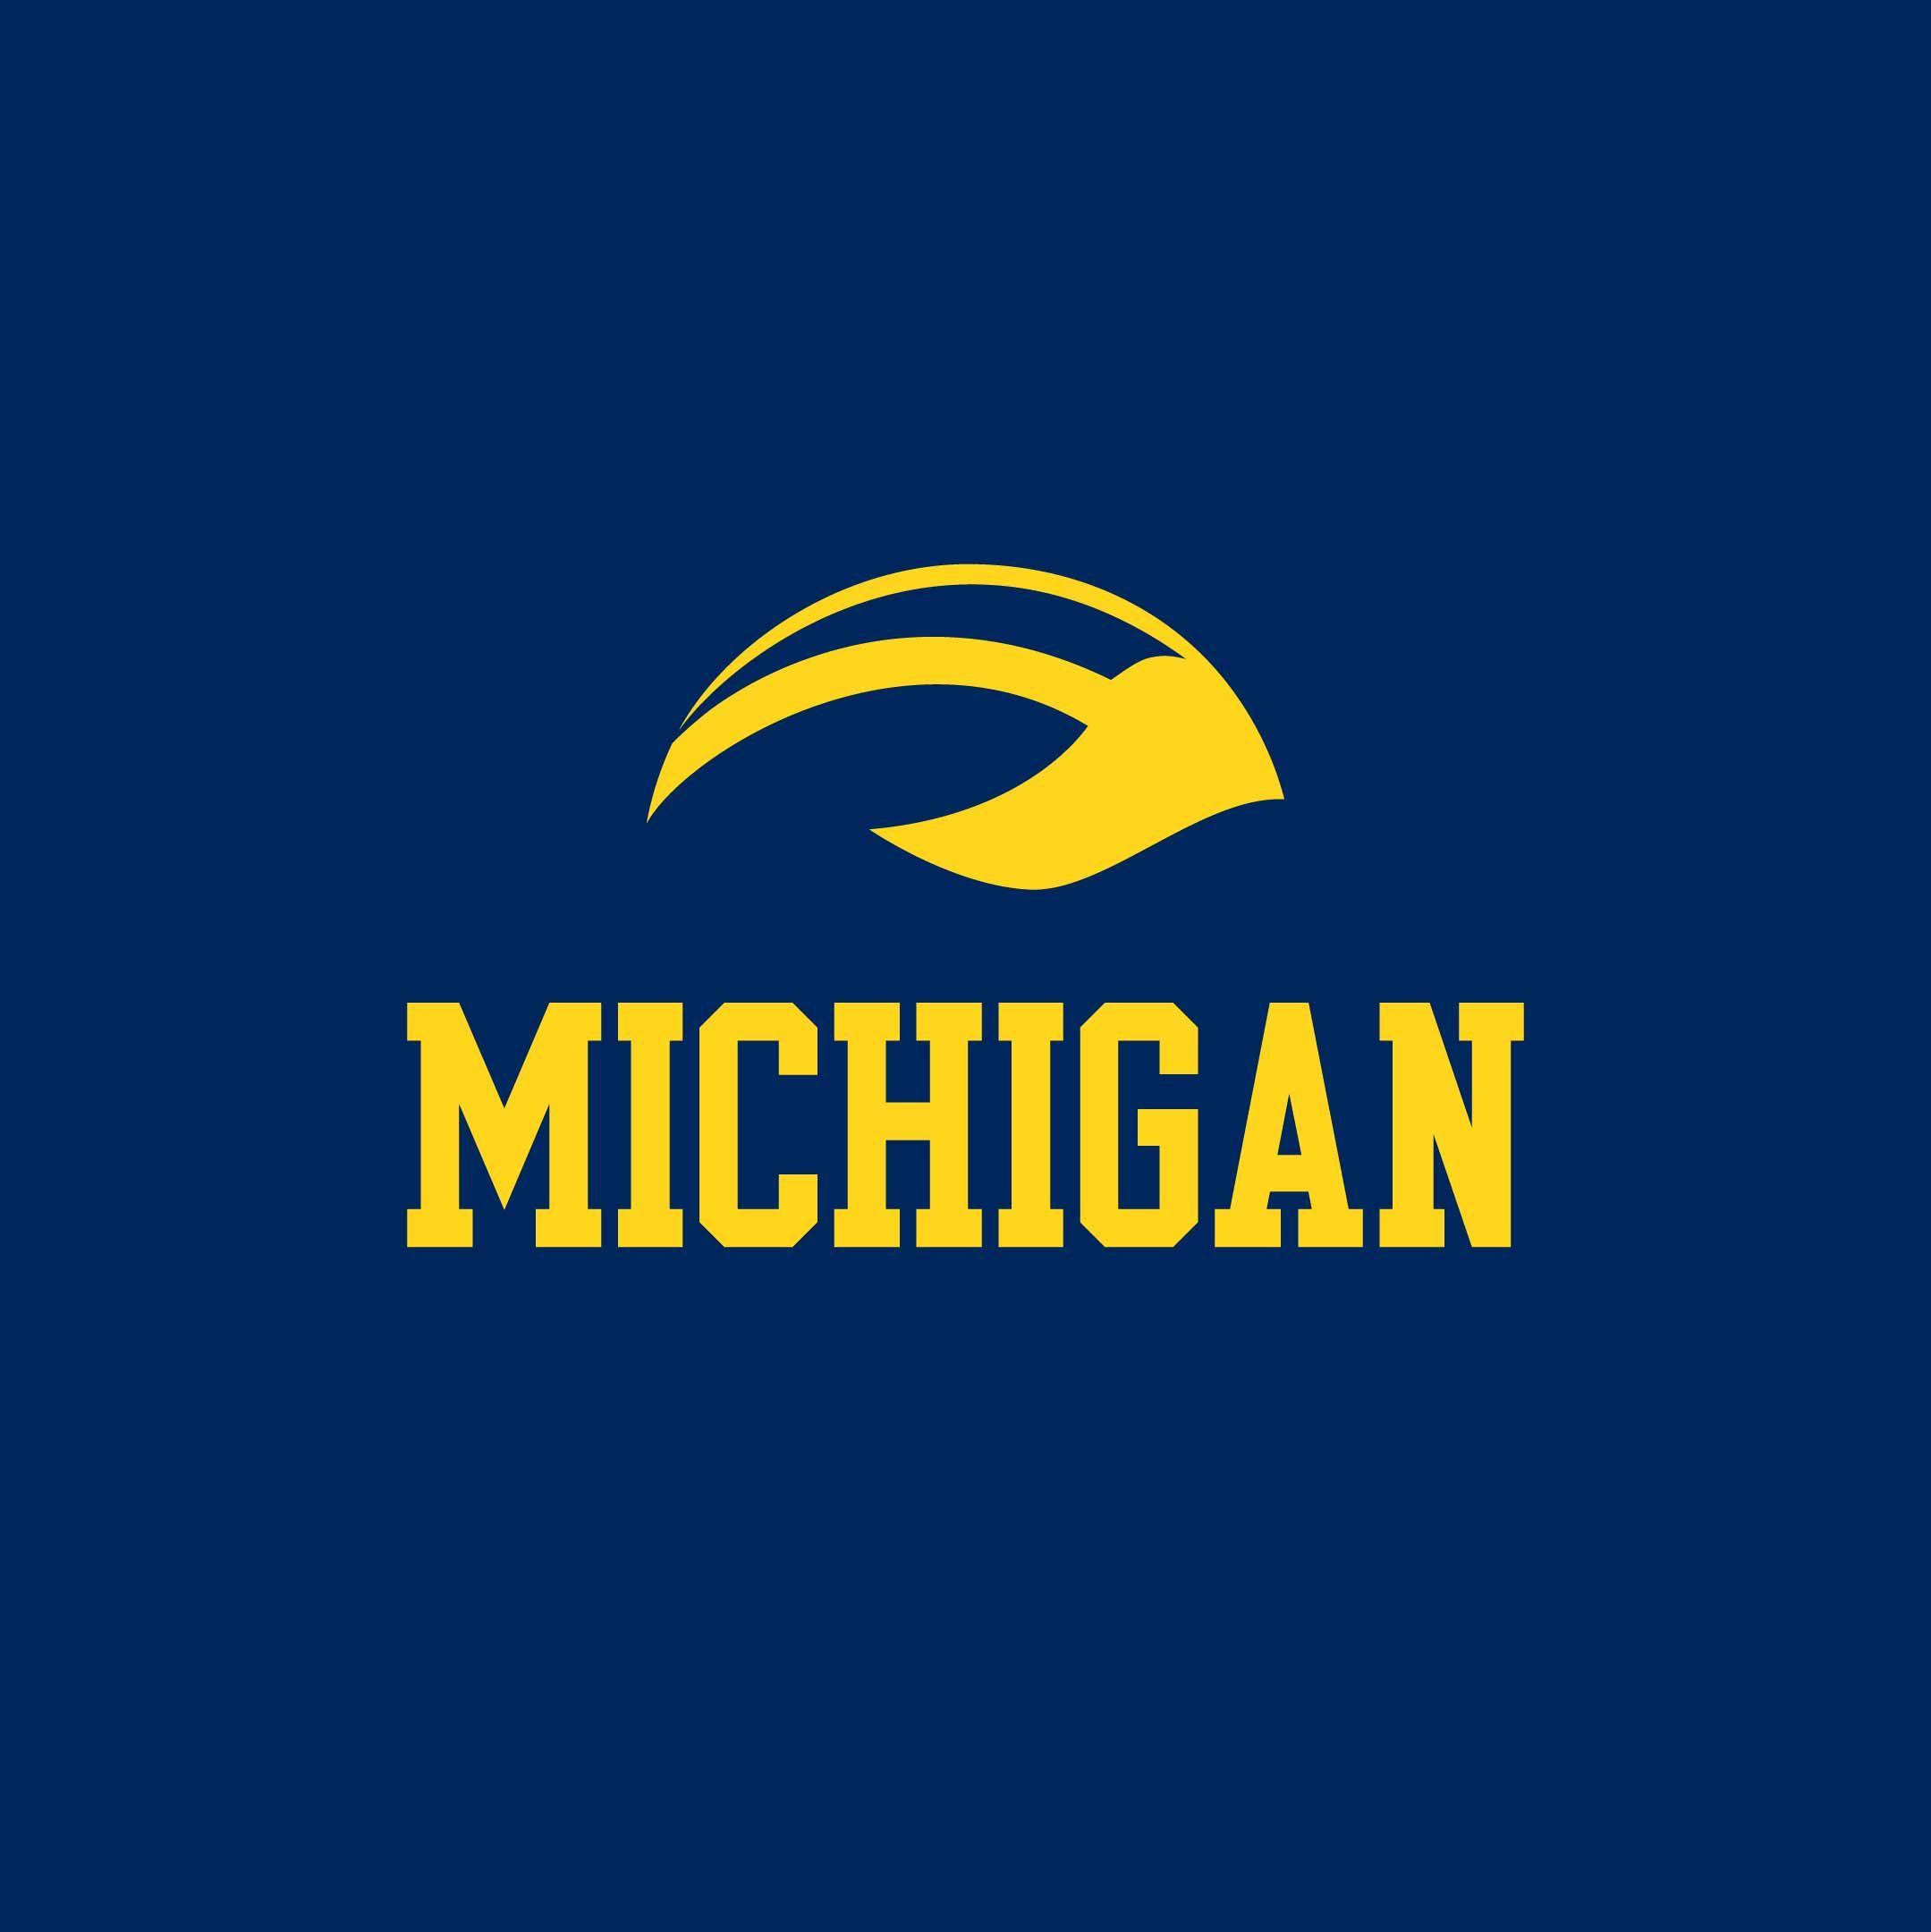 Michigan Football Logo - Michigan wolverines football helmet Logos